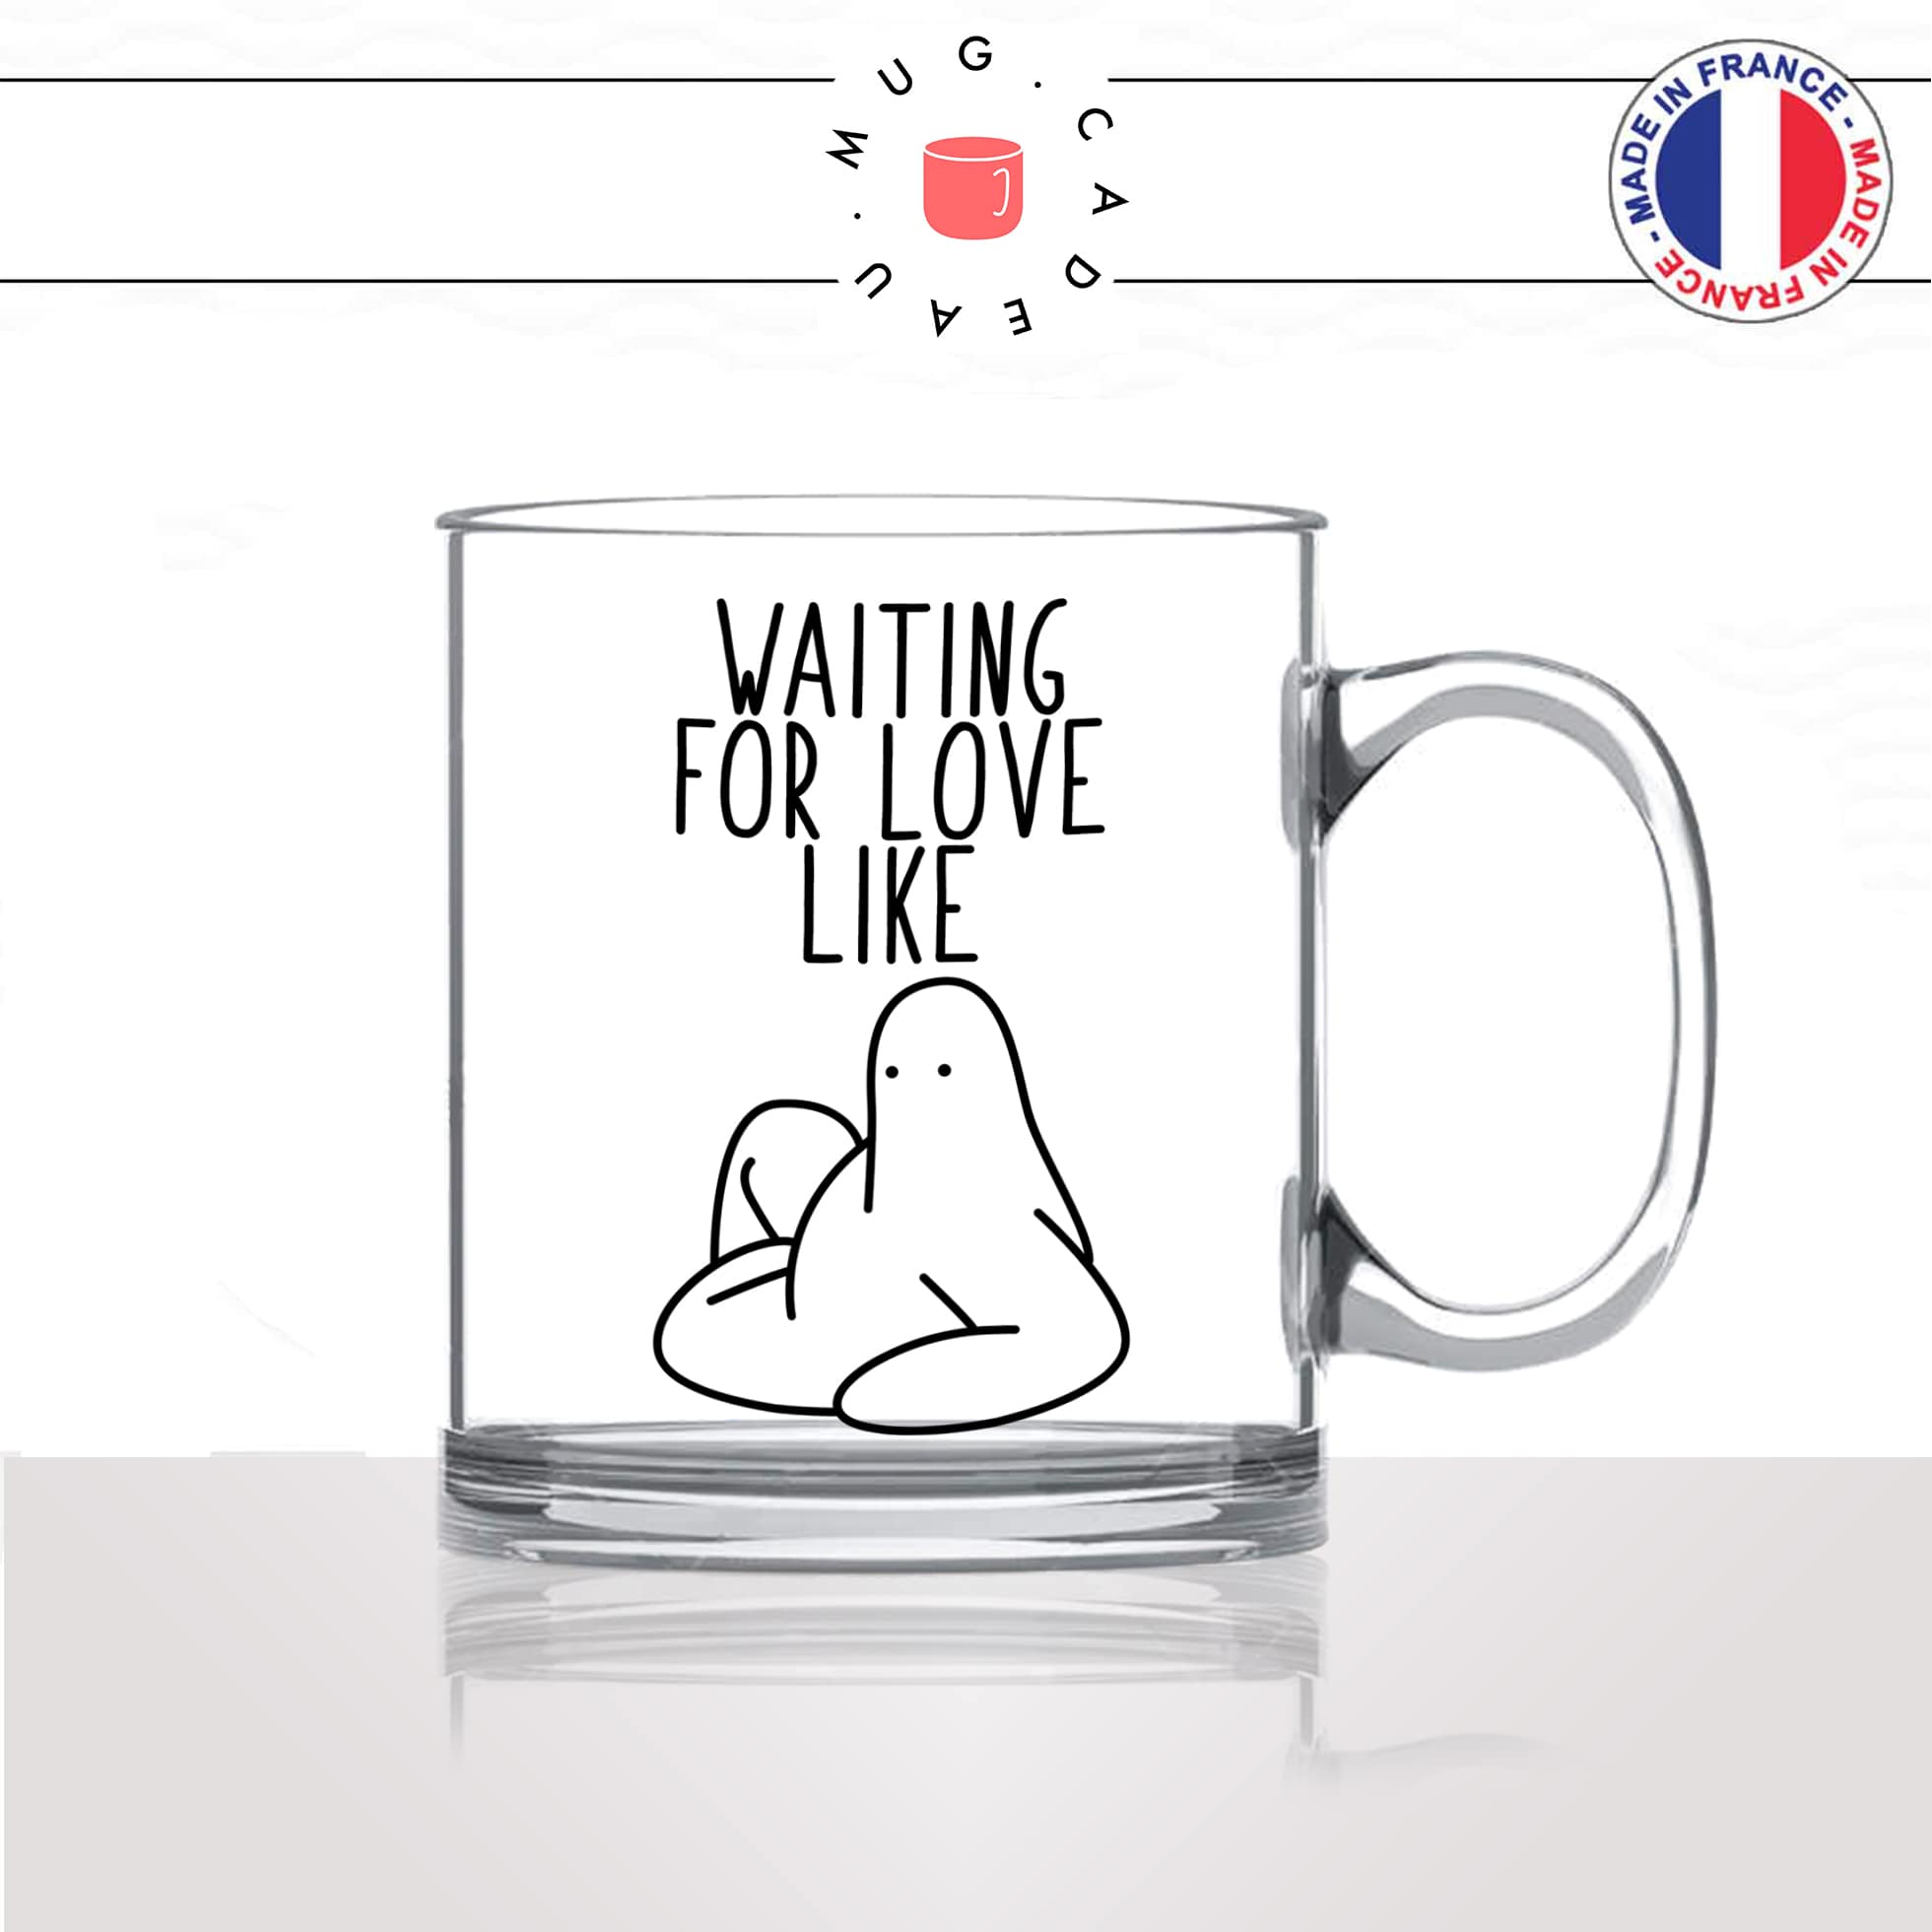 mug-tasse-en-verre-transparent-glass-célibataire-waiting-for-love-jattend-lamour-homme-femme-humour-cool-idée-cadeau-fun-drole-café-thé2-min